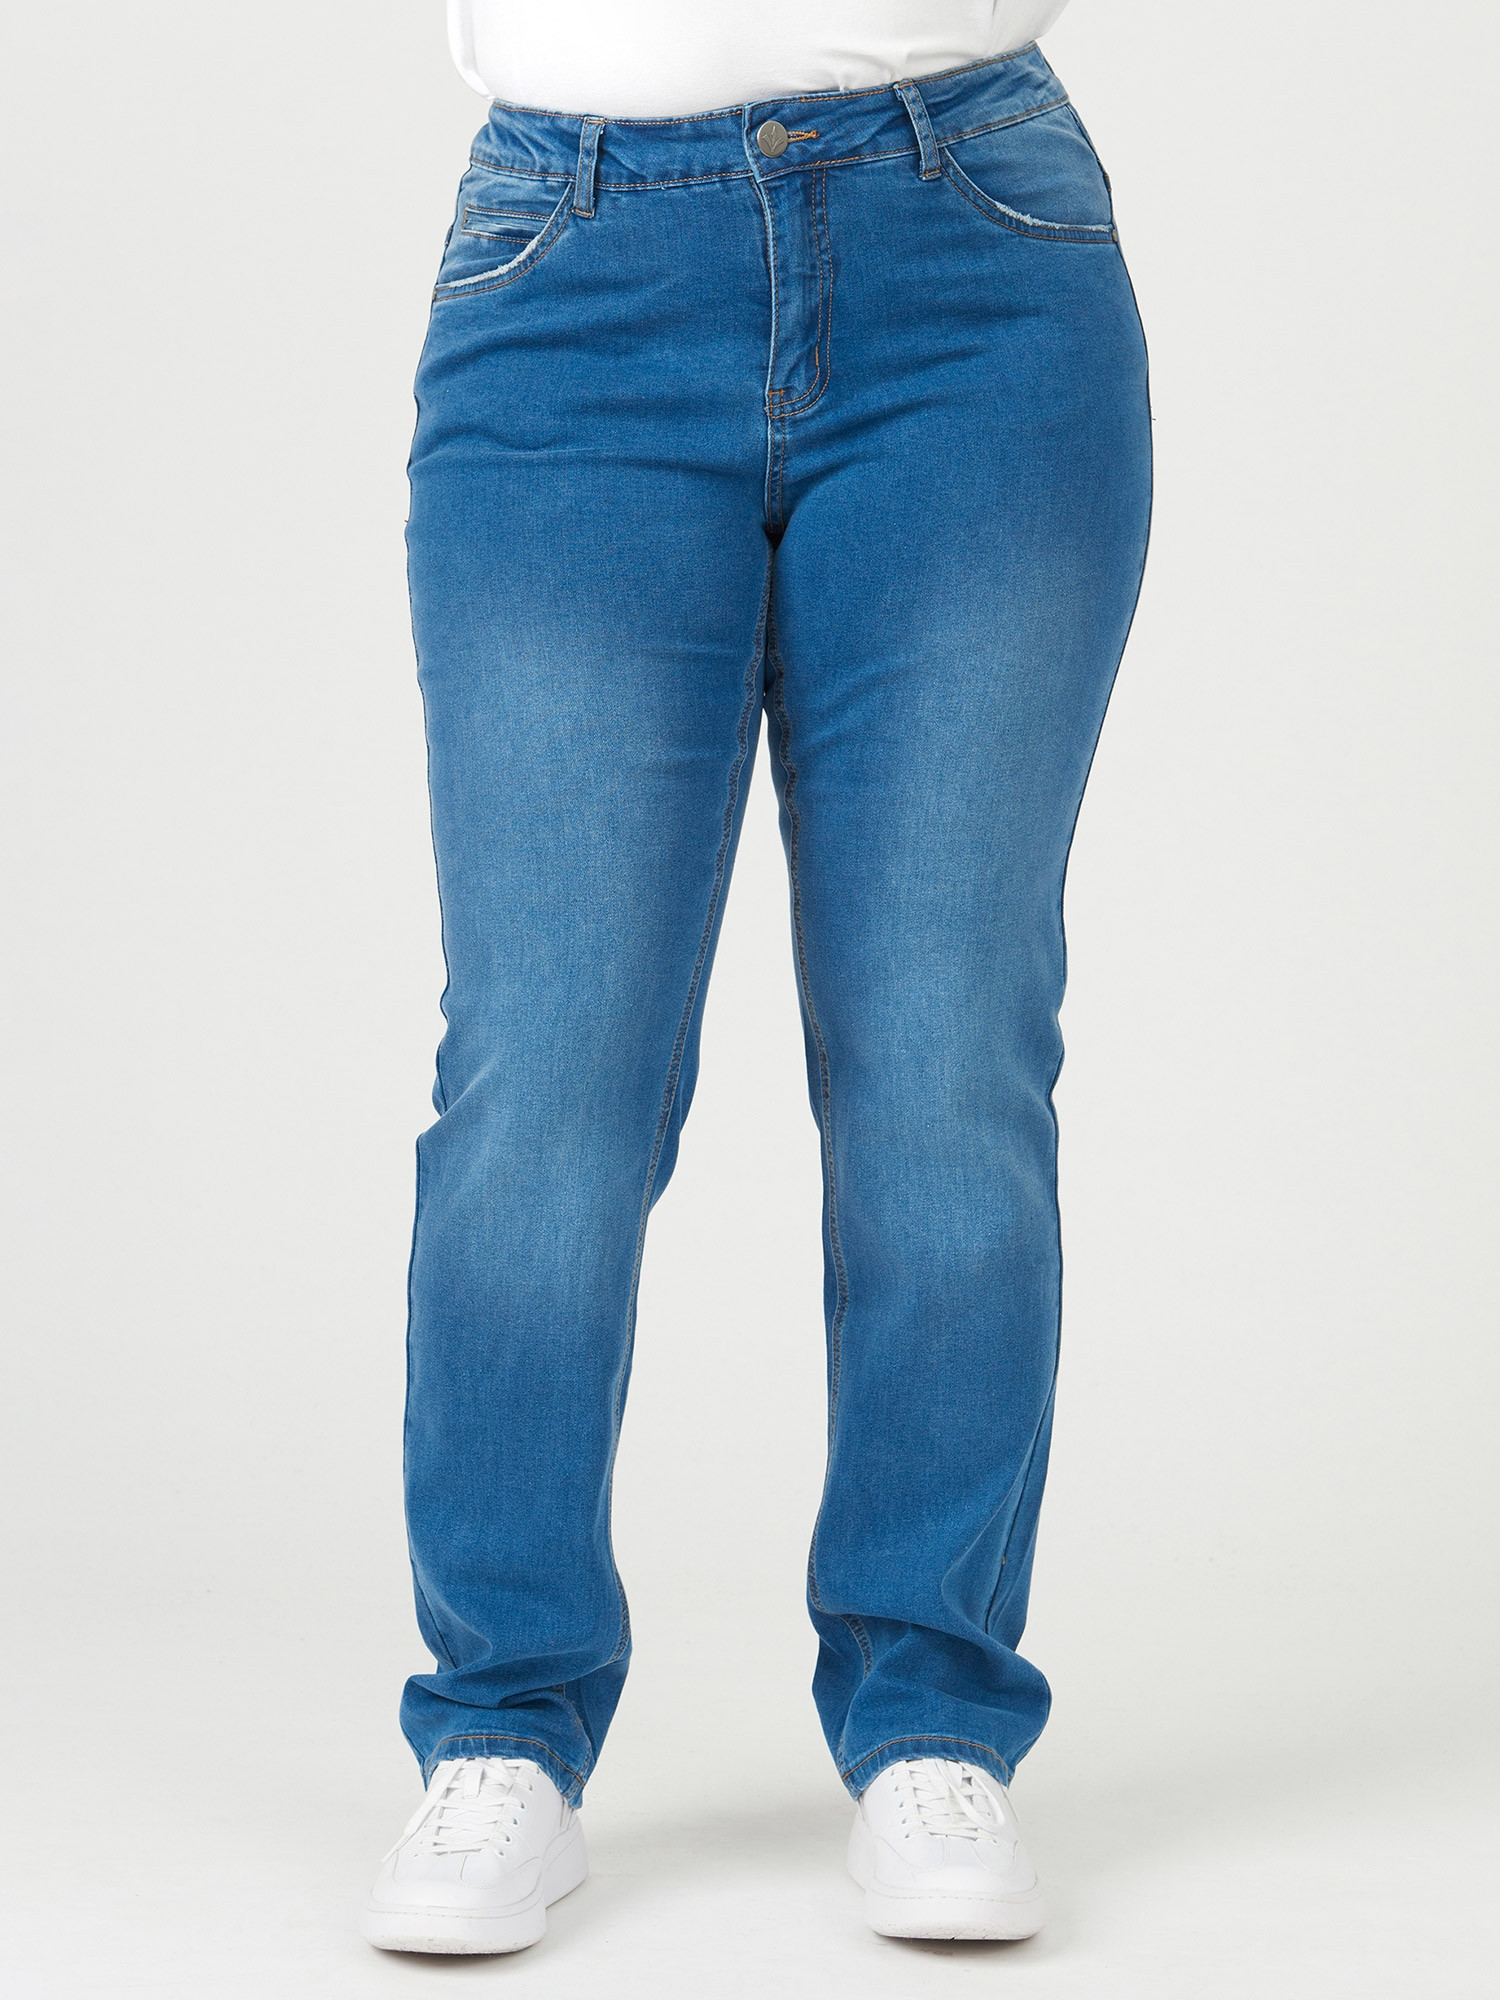 ROME - Blå jeans med brett midjeband